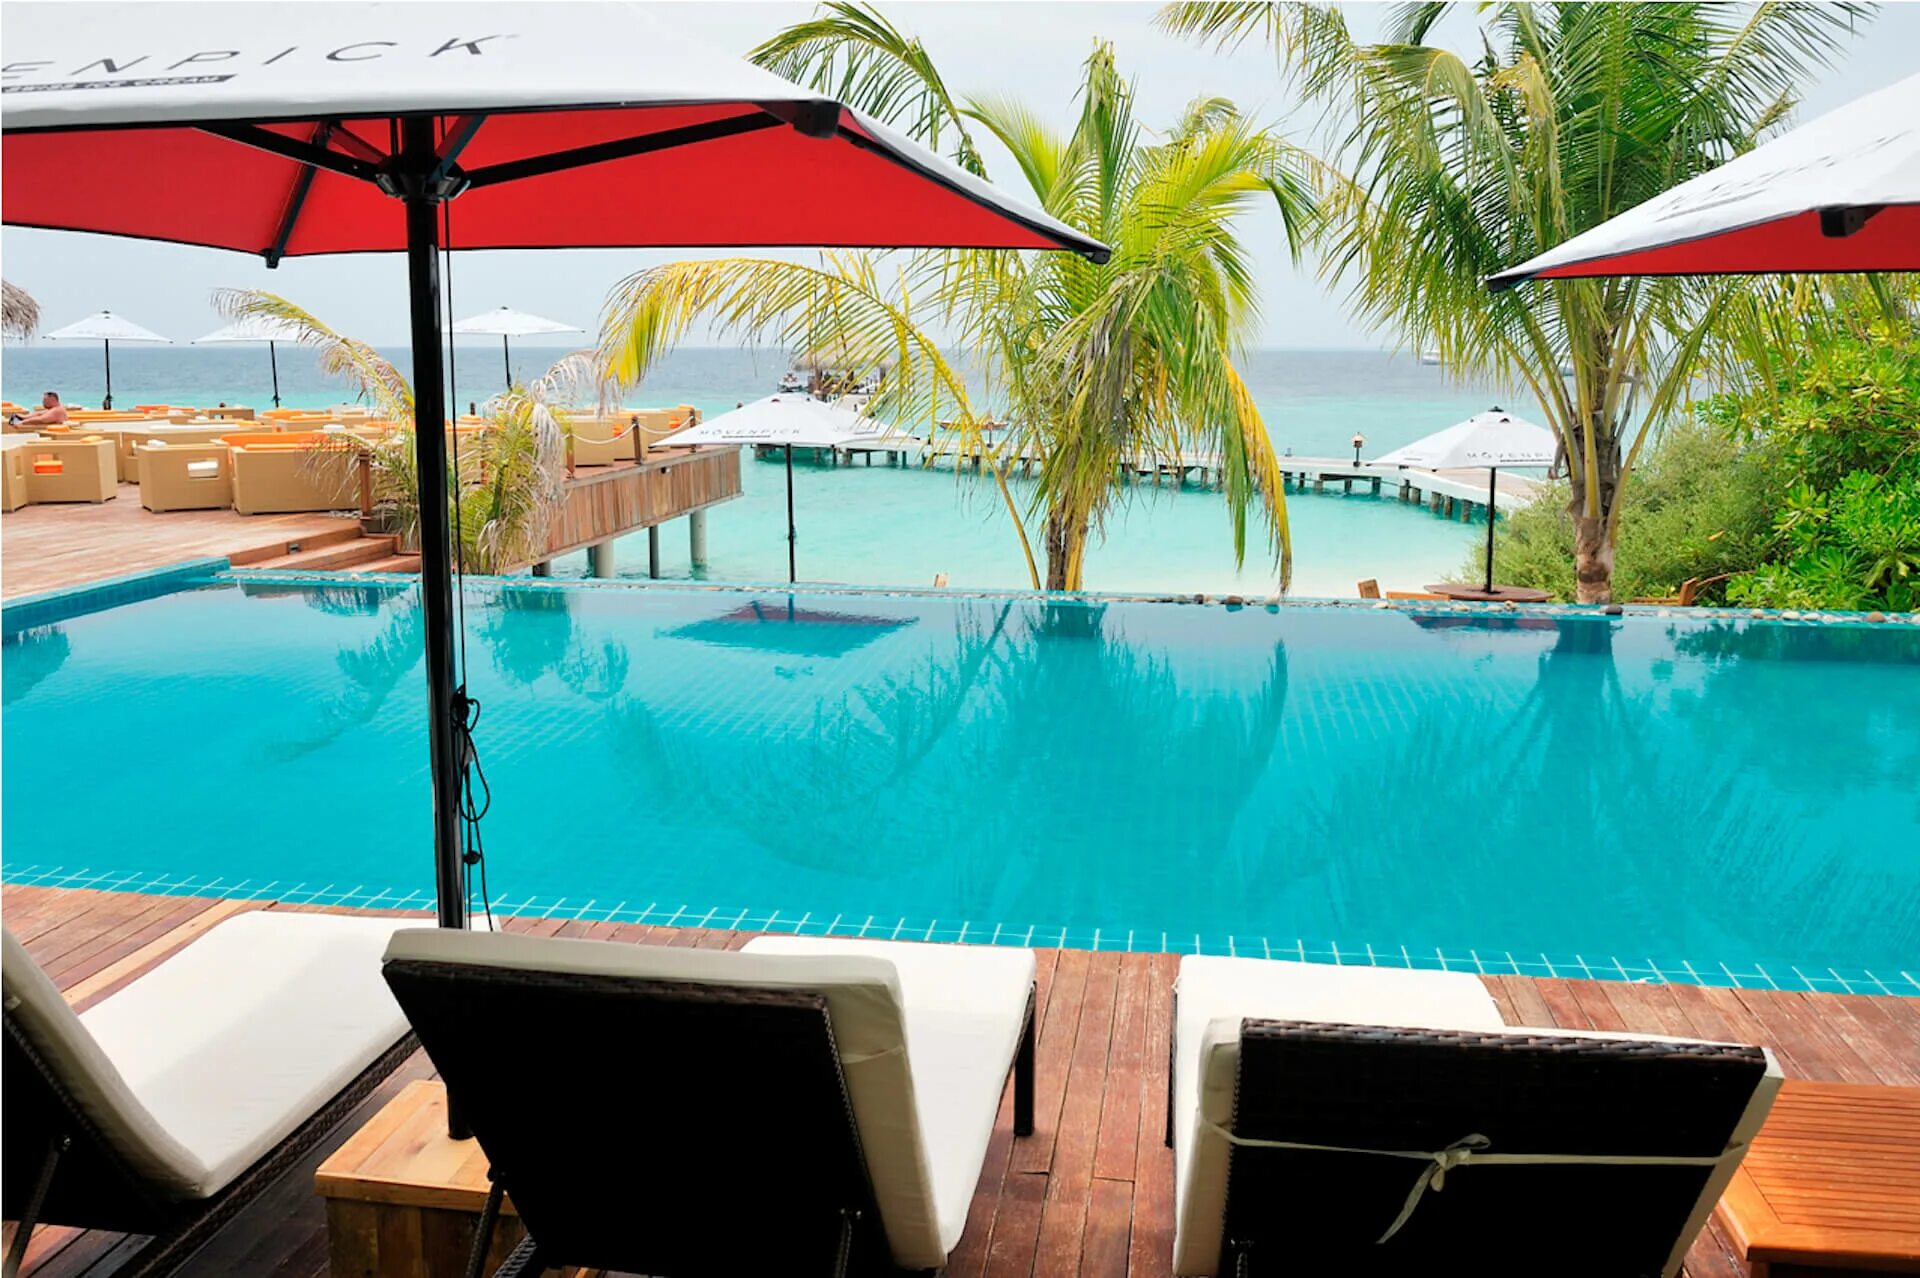 Eriyadu Island Resort. Eriyadu Island Maldives 4. Eriyadu Island Resort and Spa Мальдивы. Eriyadu Island Resort 4* (North male' Atoll). Eriyadu island resort 4